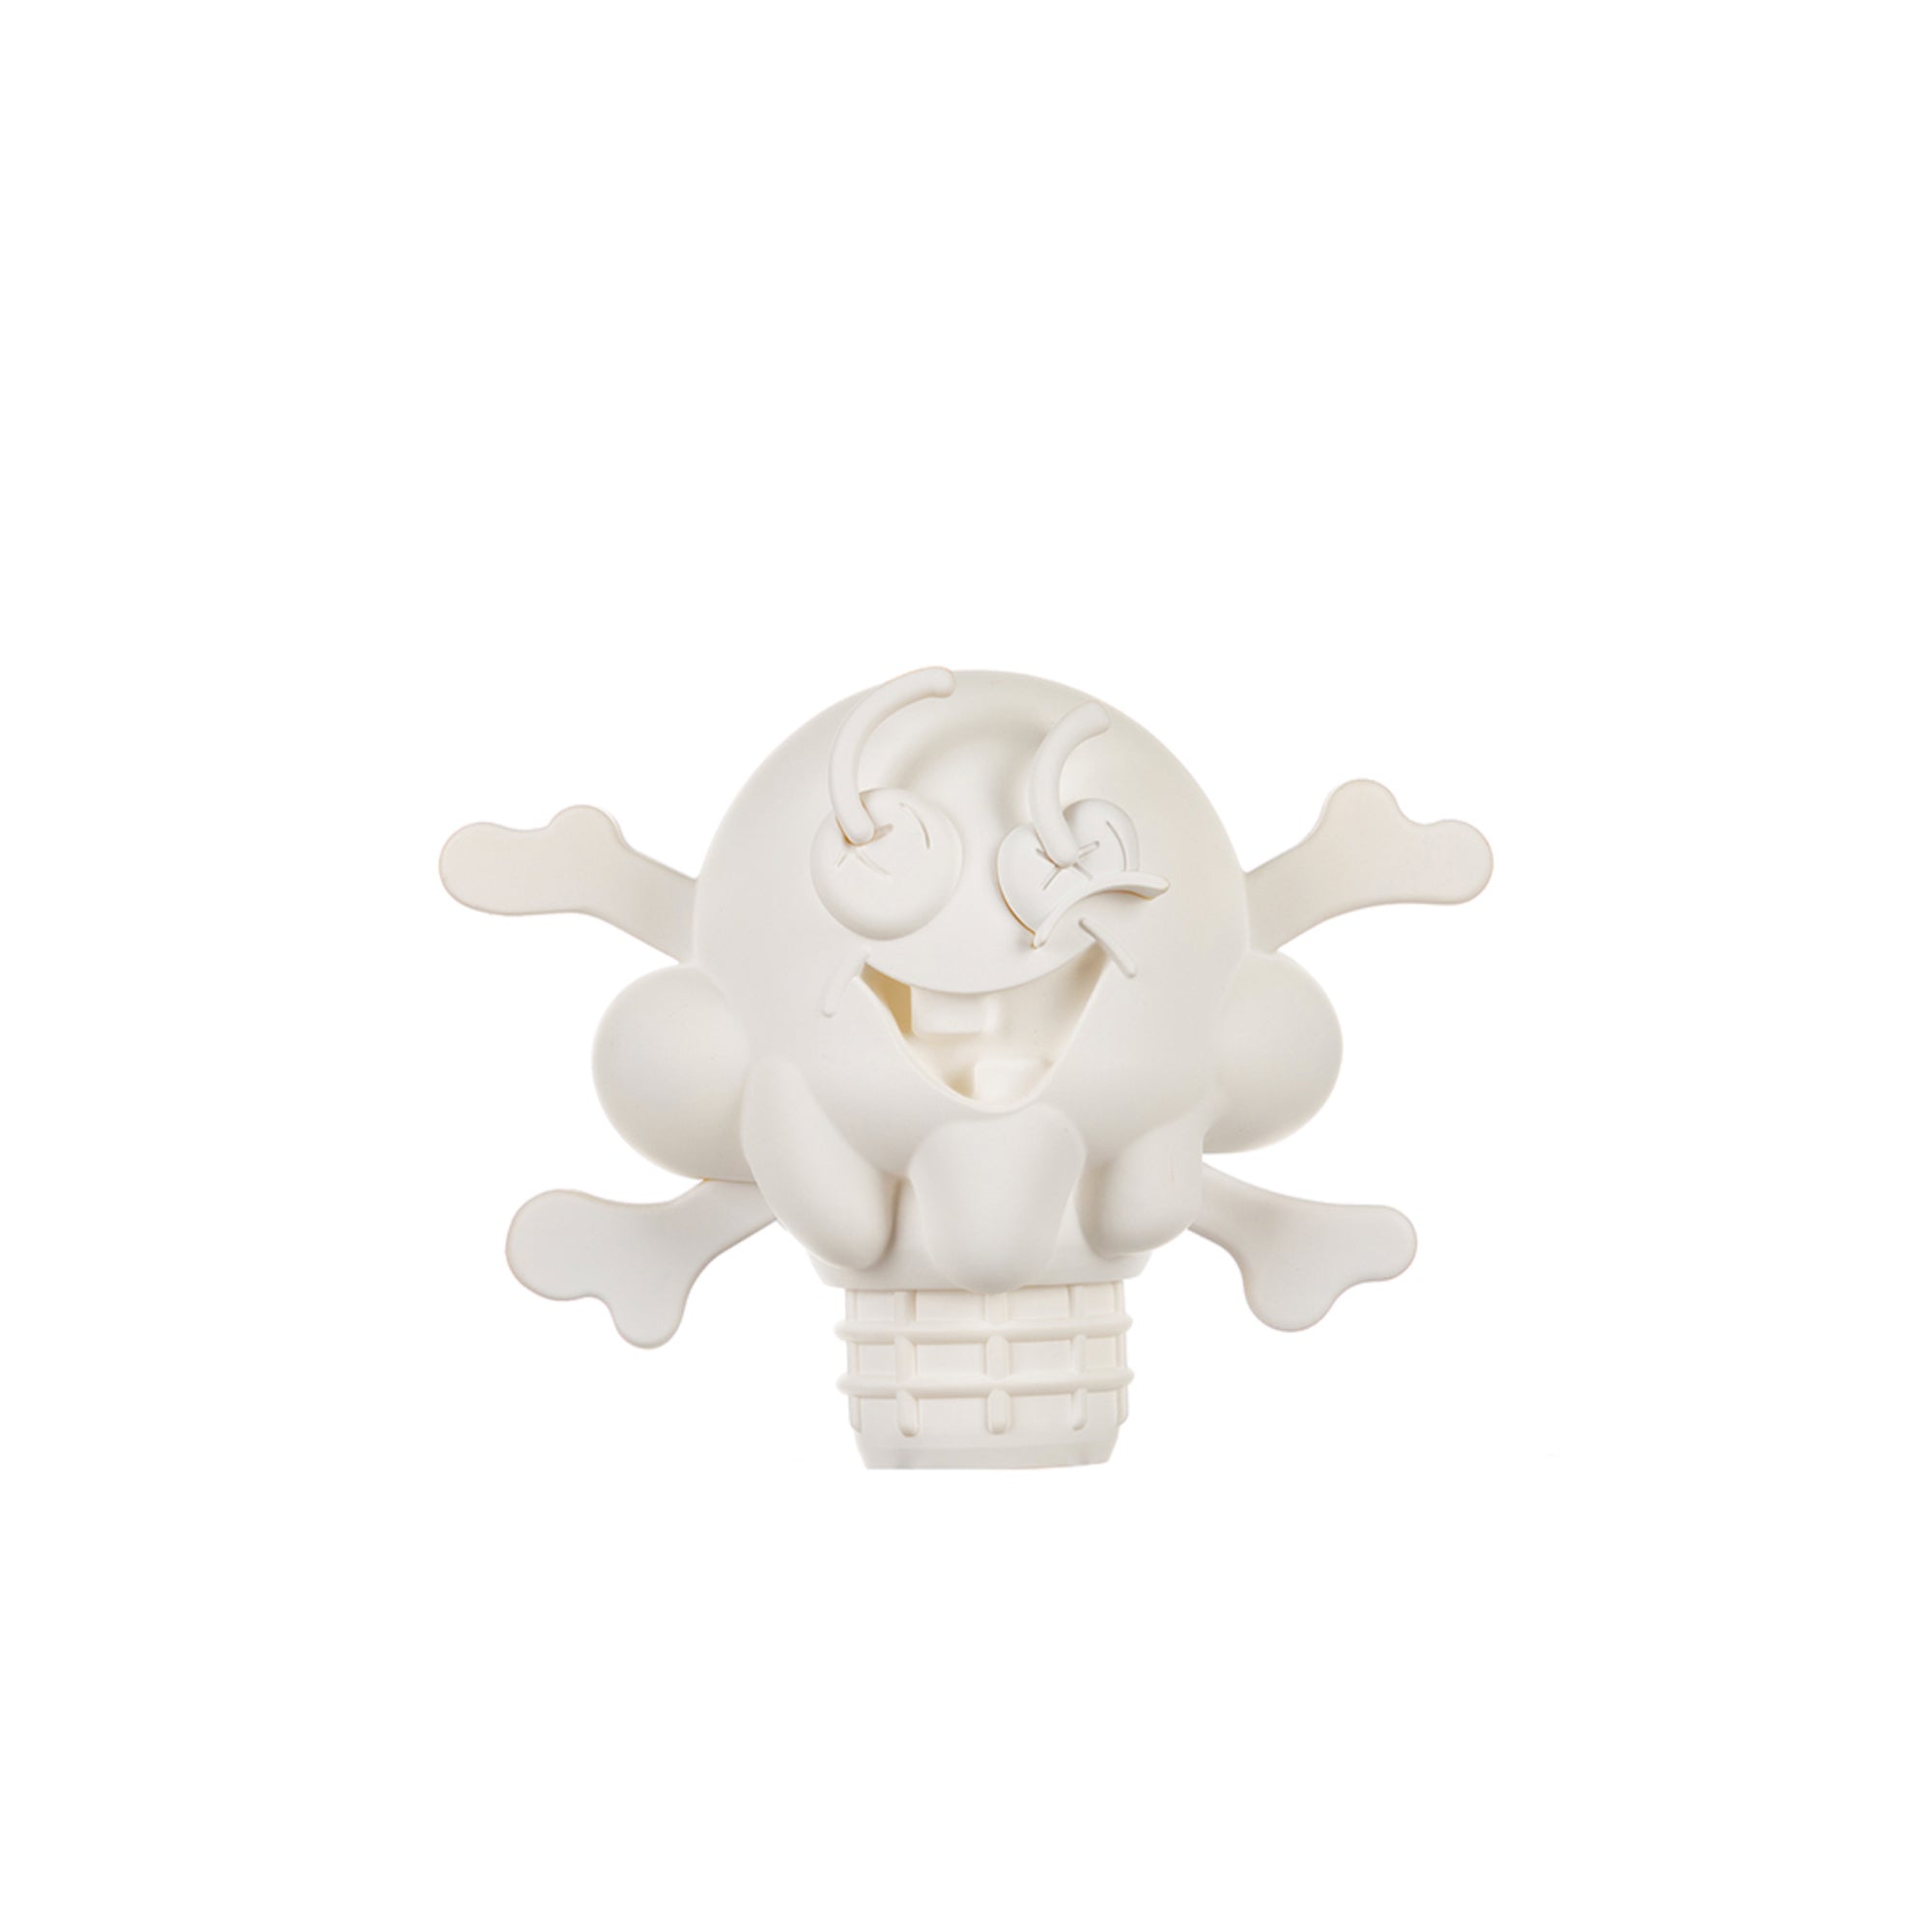 Icecream Cones N Bones Figurine 'White'